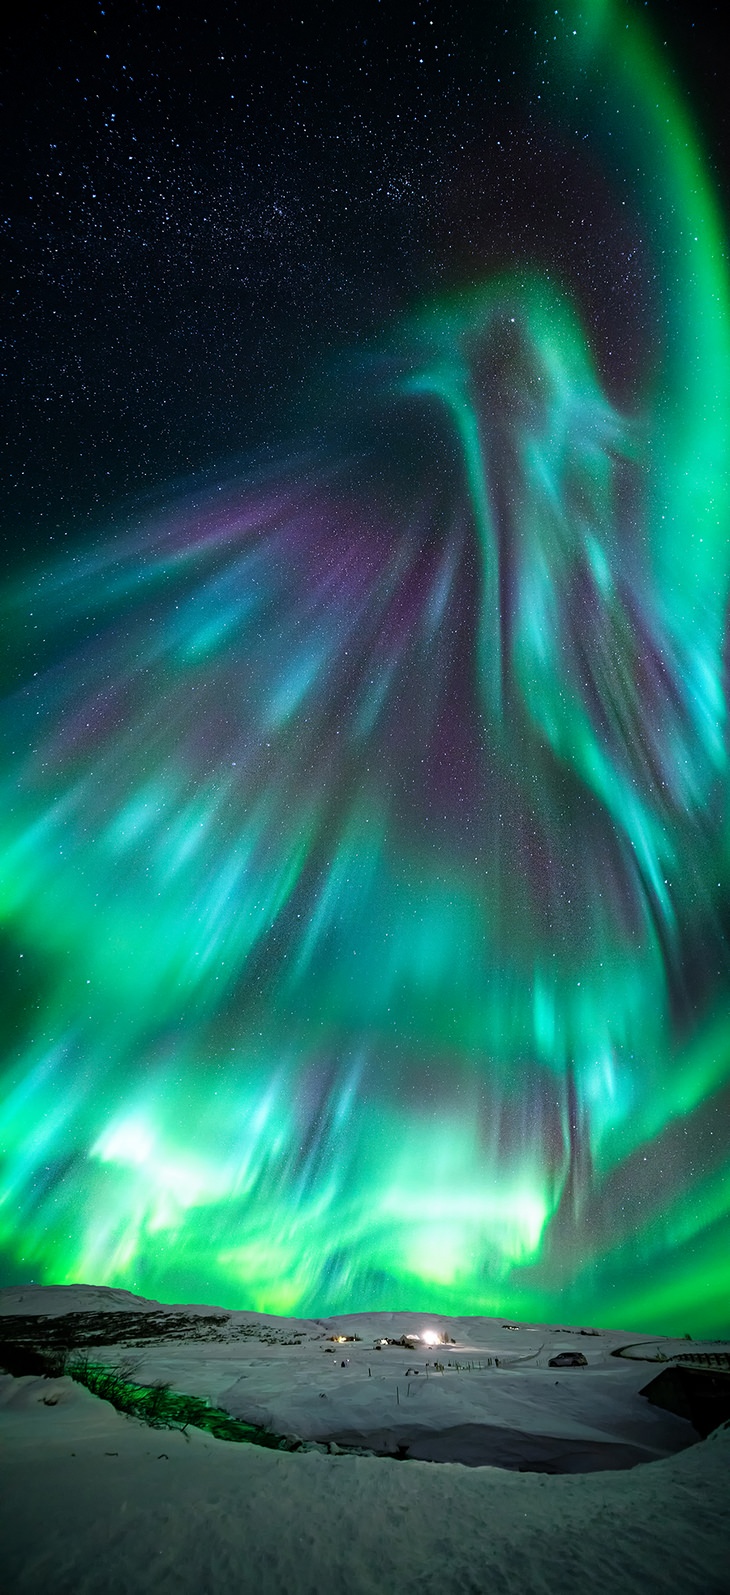 Astronomy pictures: phoenix aurora